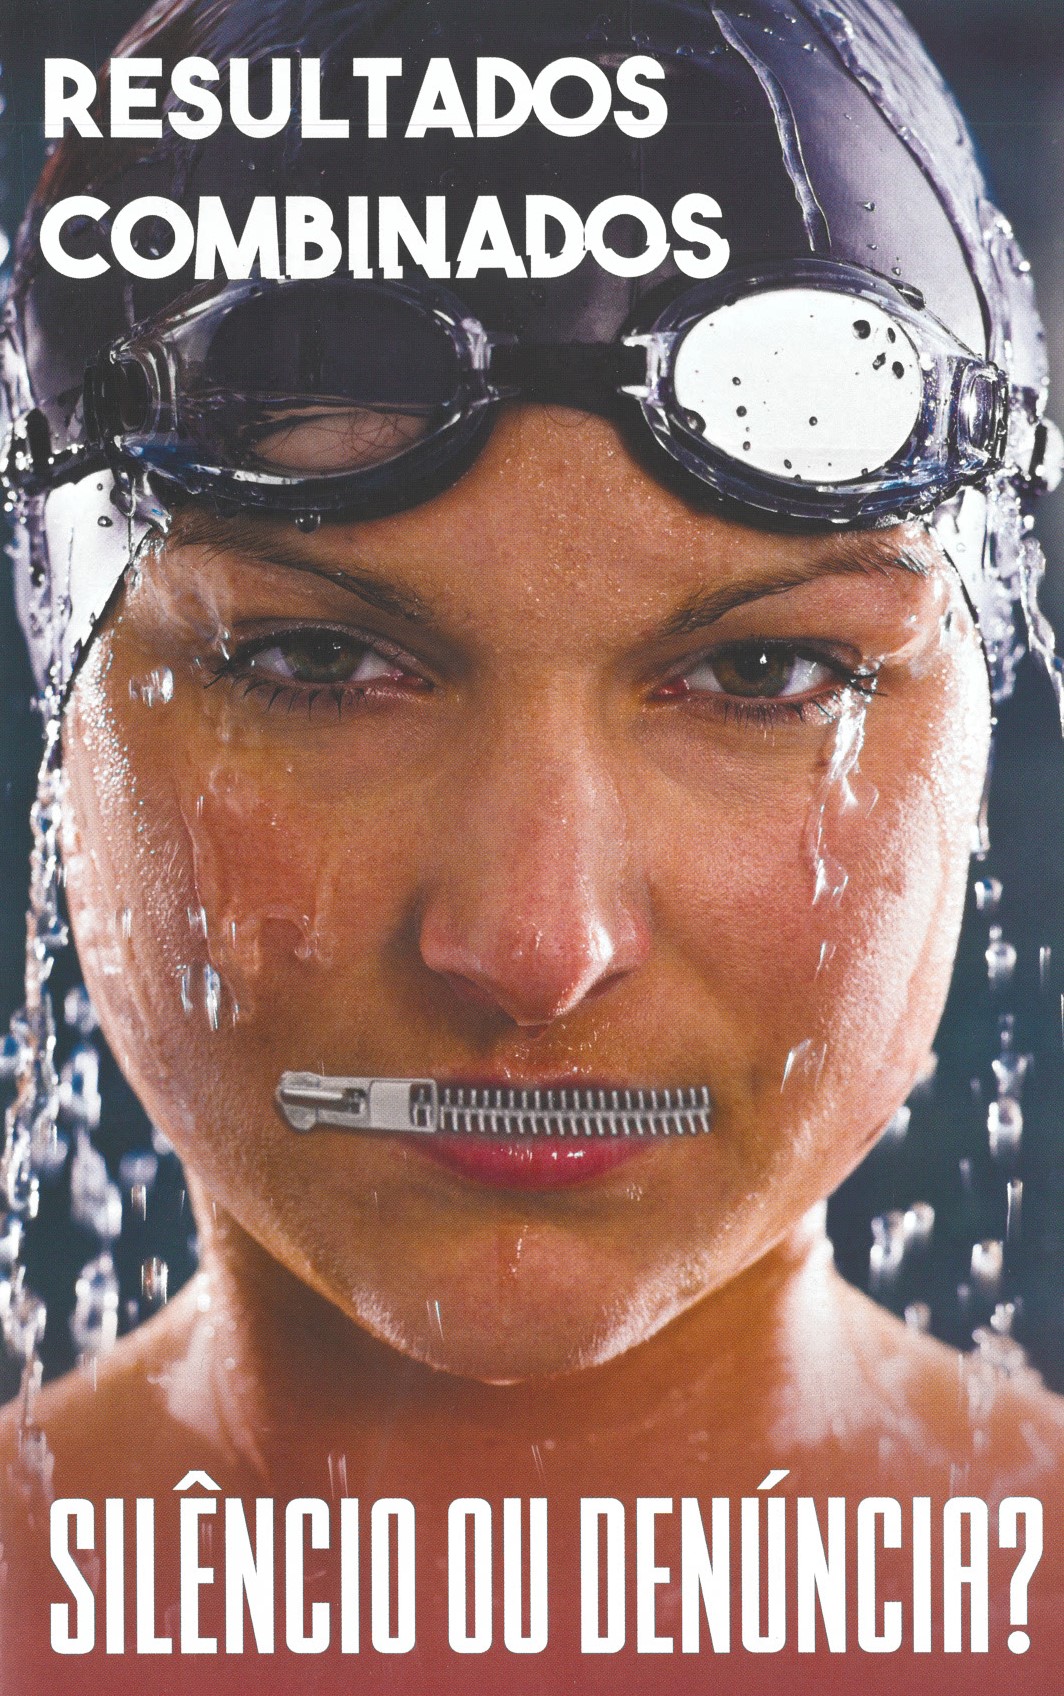 Nadadora com touca e óculos de natação com um fecho zip na boca fechada.